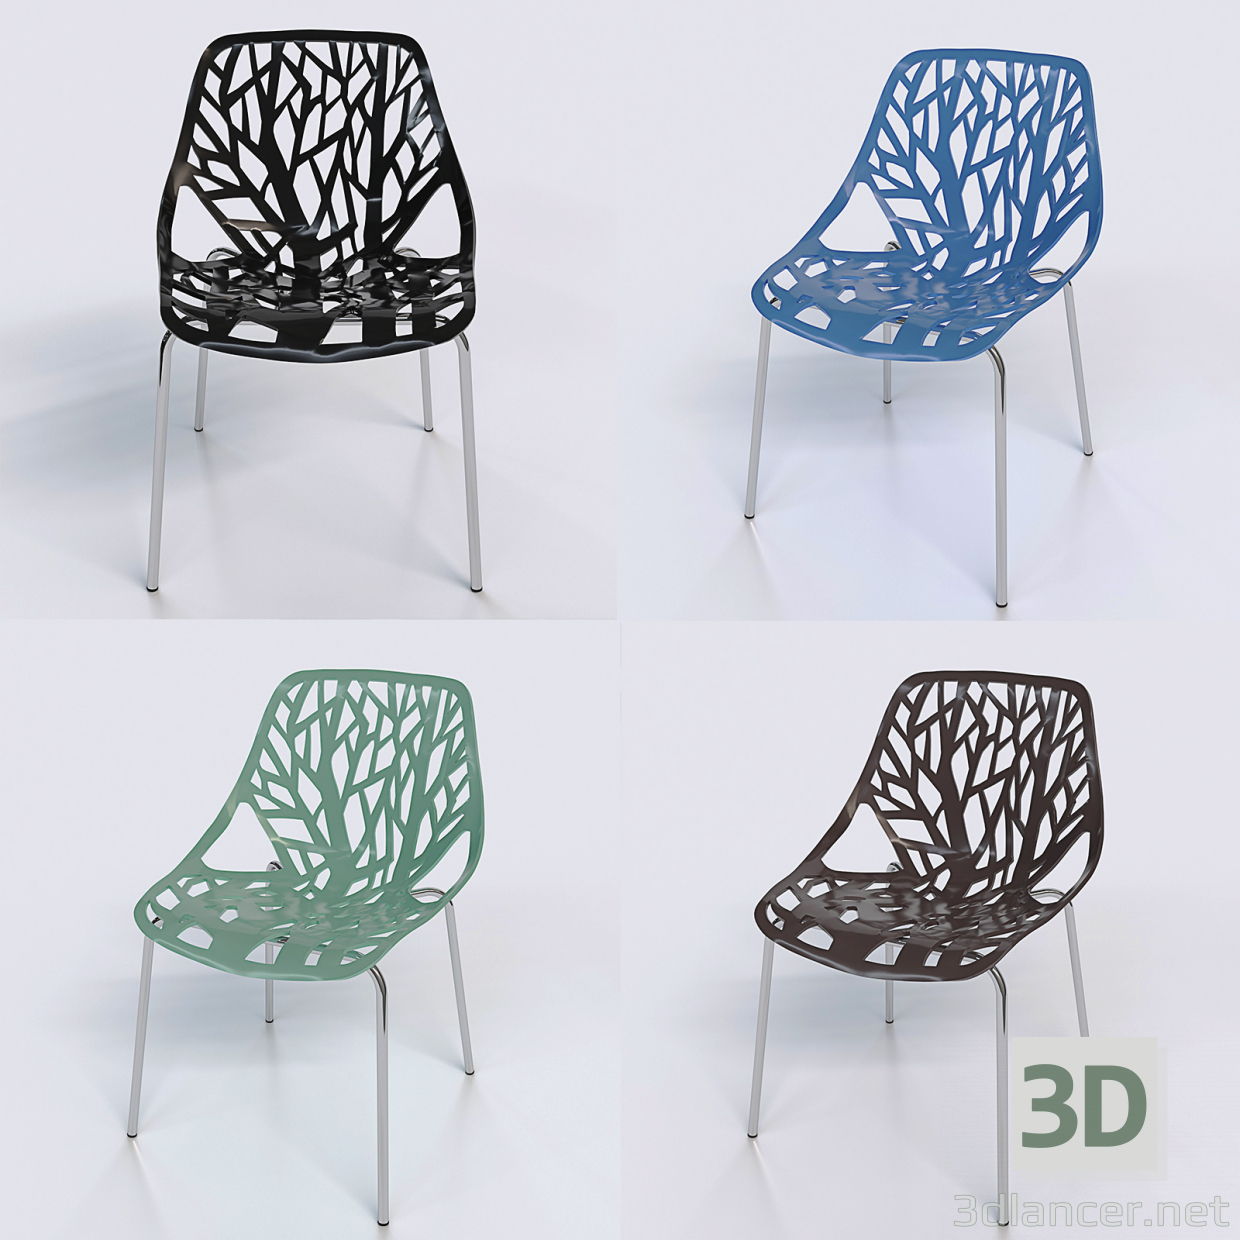 3D Yemek sandalyesi modeli satın - render